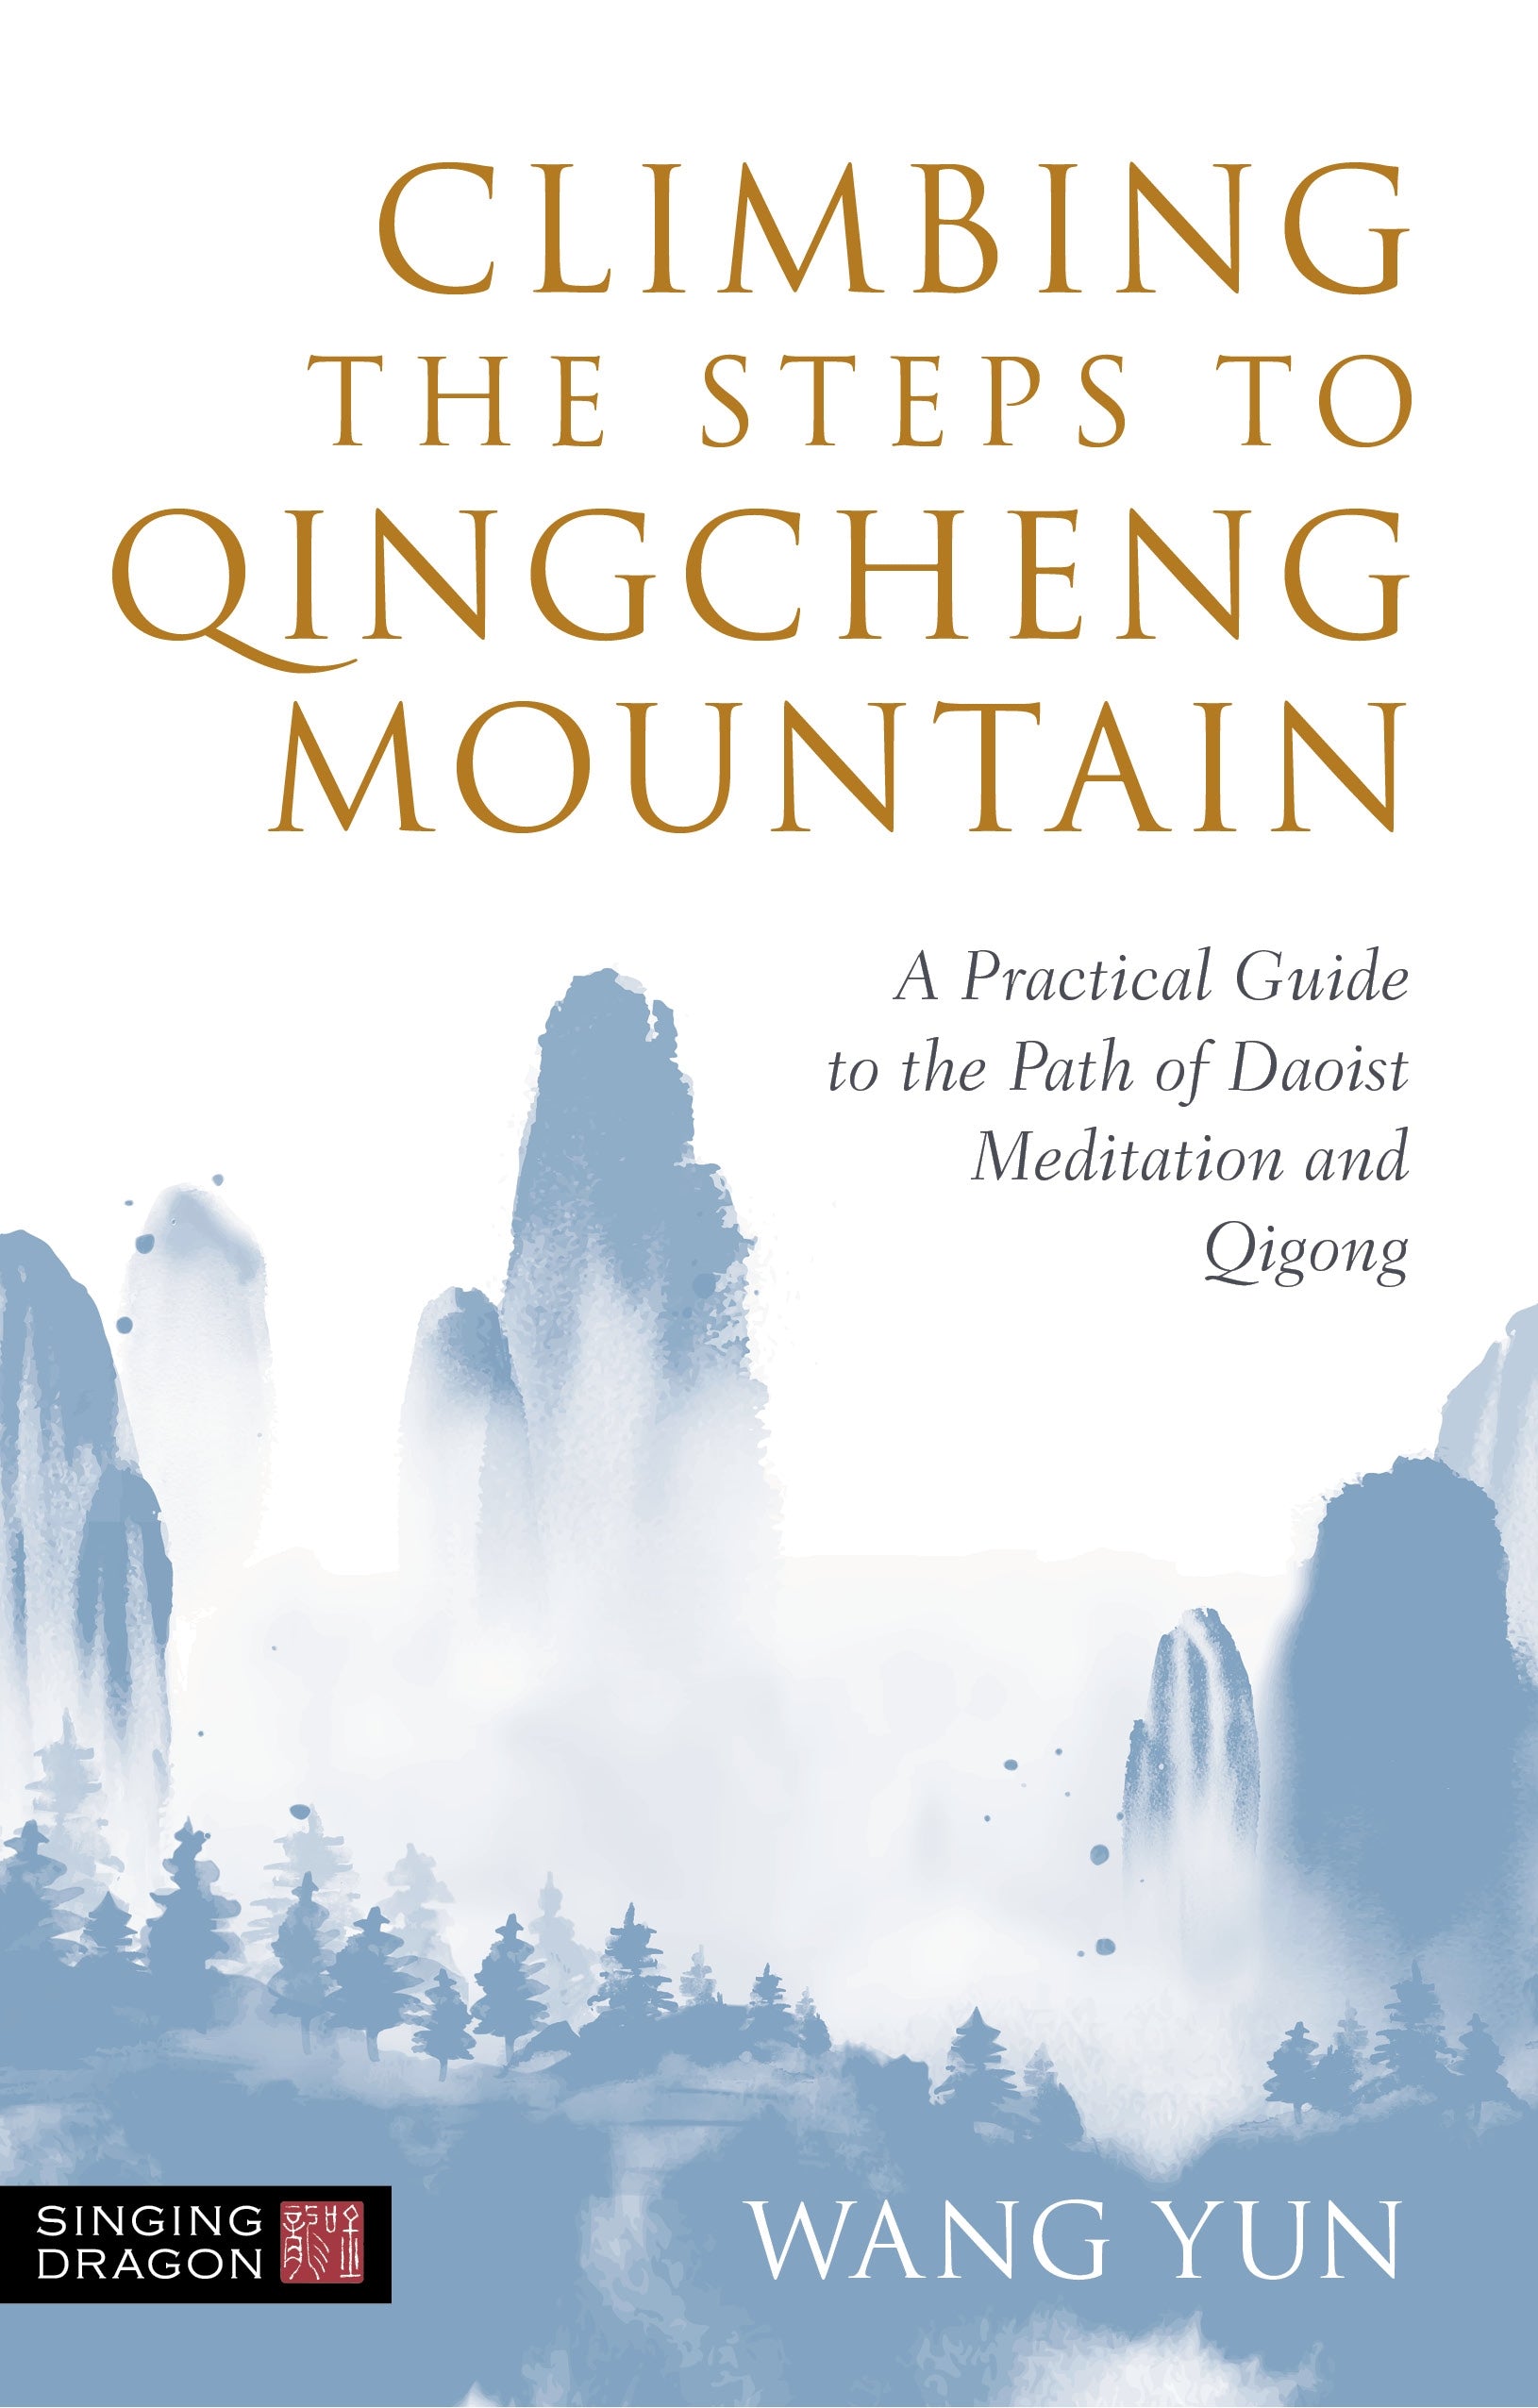 Climbing the Steps to Qingcheng Mountain by Wang Yun